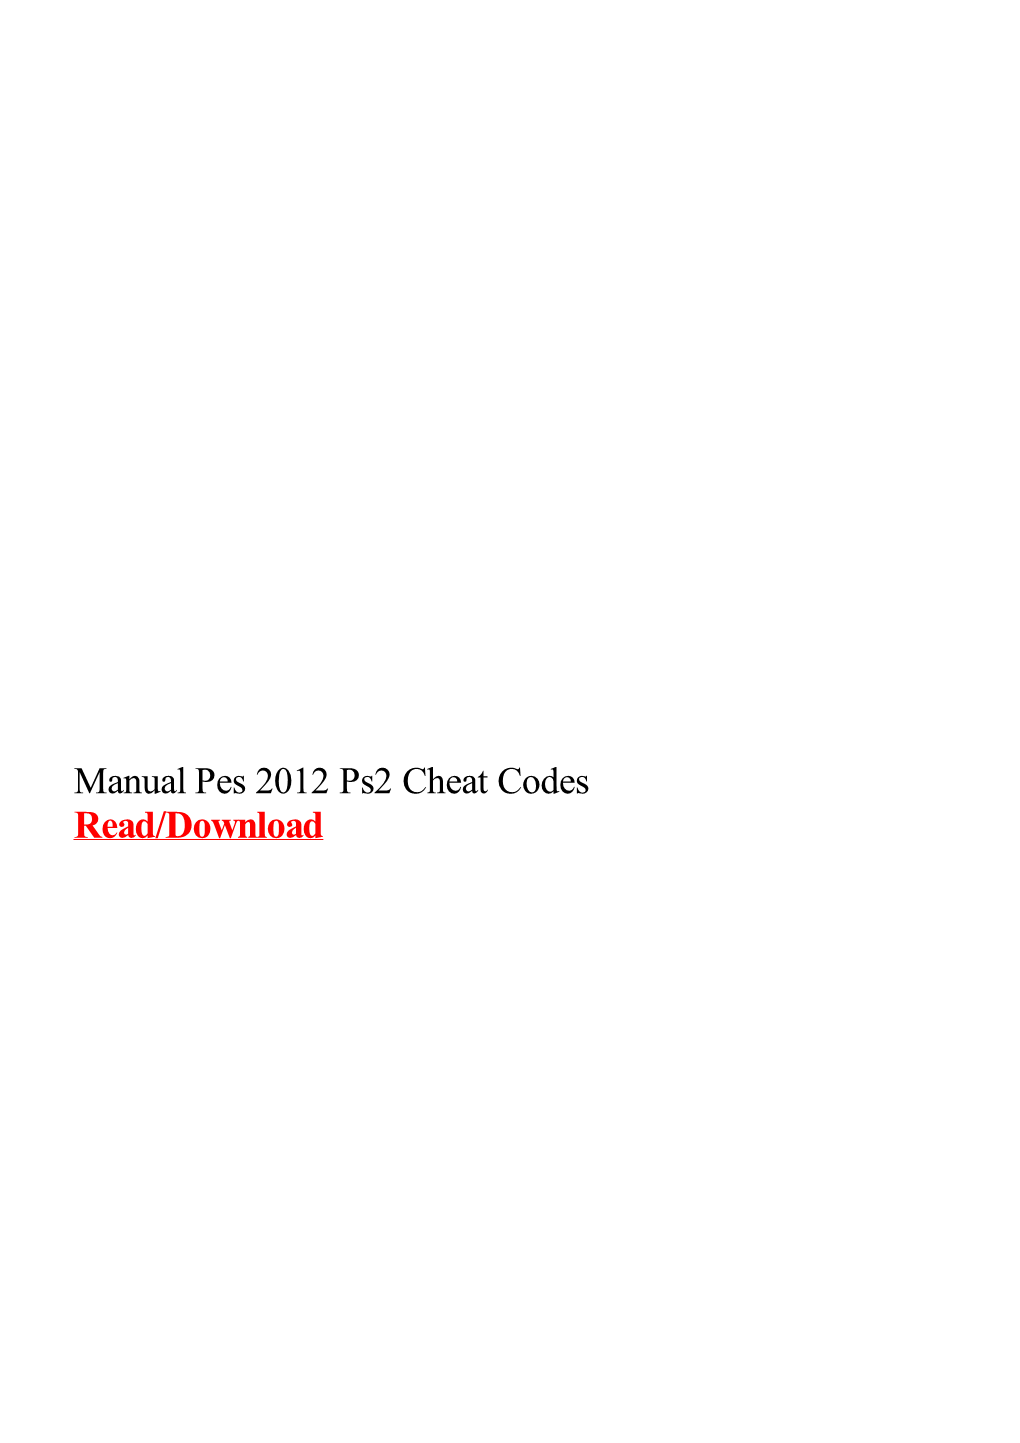 Manual Pes 2012 Ps2 Cheat Codes